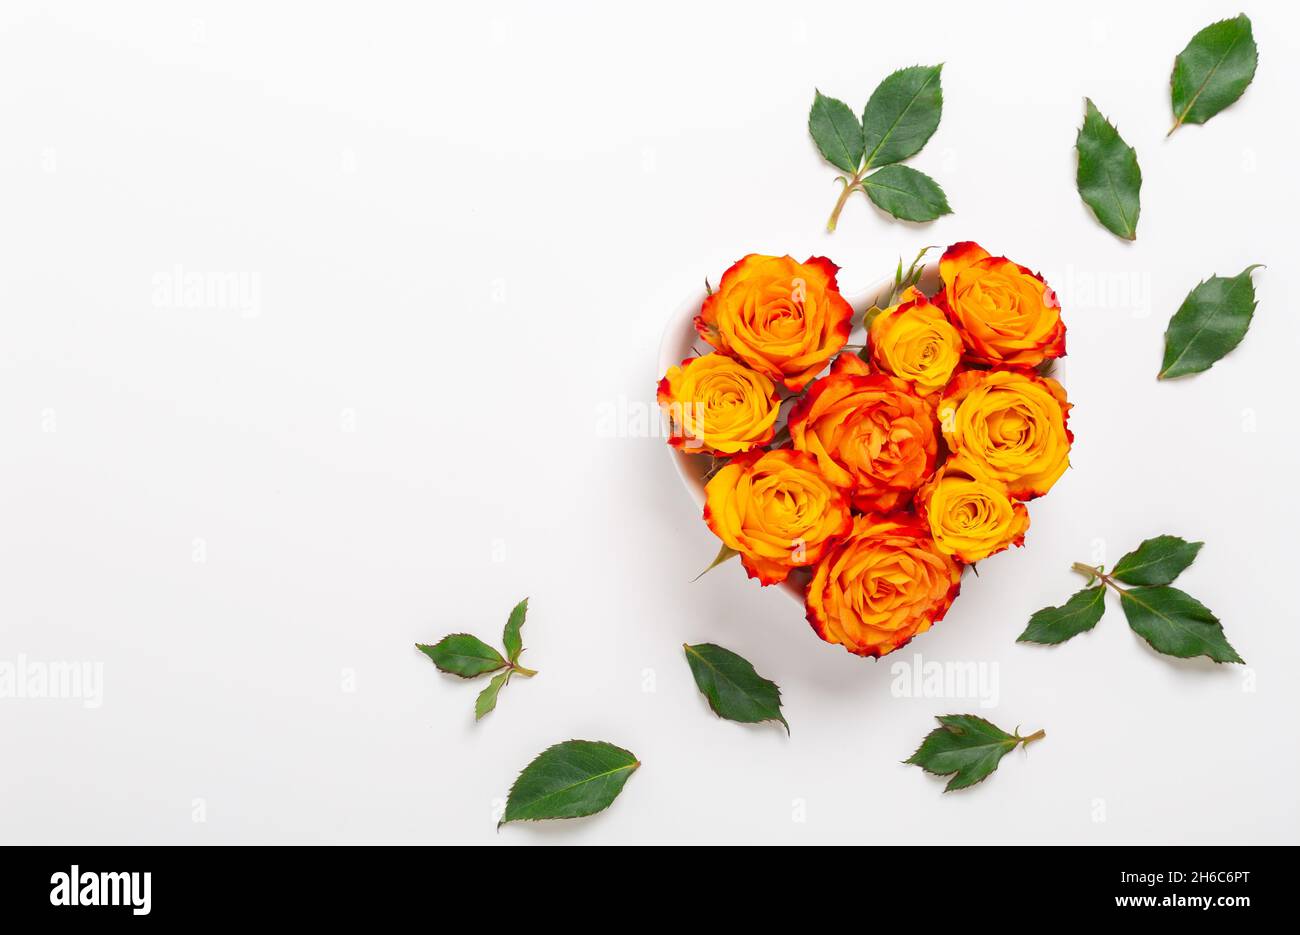 Composition des fleurs. Fleurs roses orange dans un bol en forme de coeur sur fond blanc. Concept de la Saint-Valentin. Flat lay, vue de dessus, espace de copie - image Banque D'Images